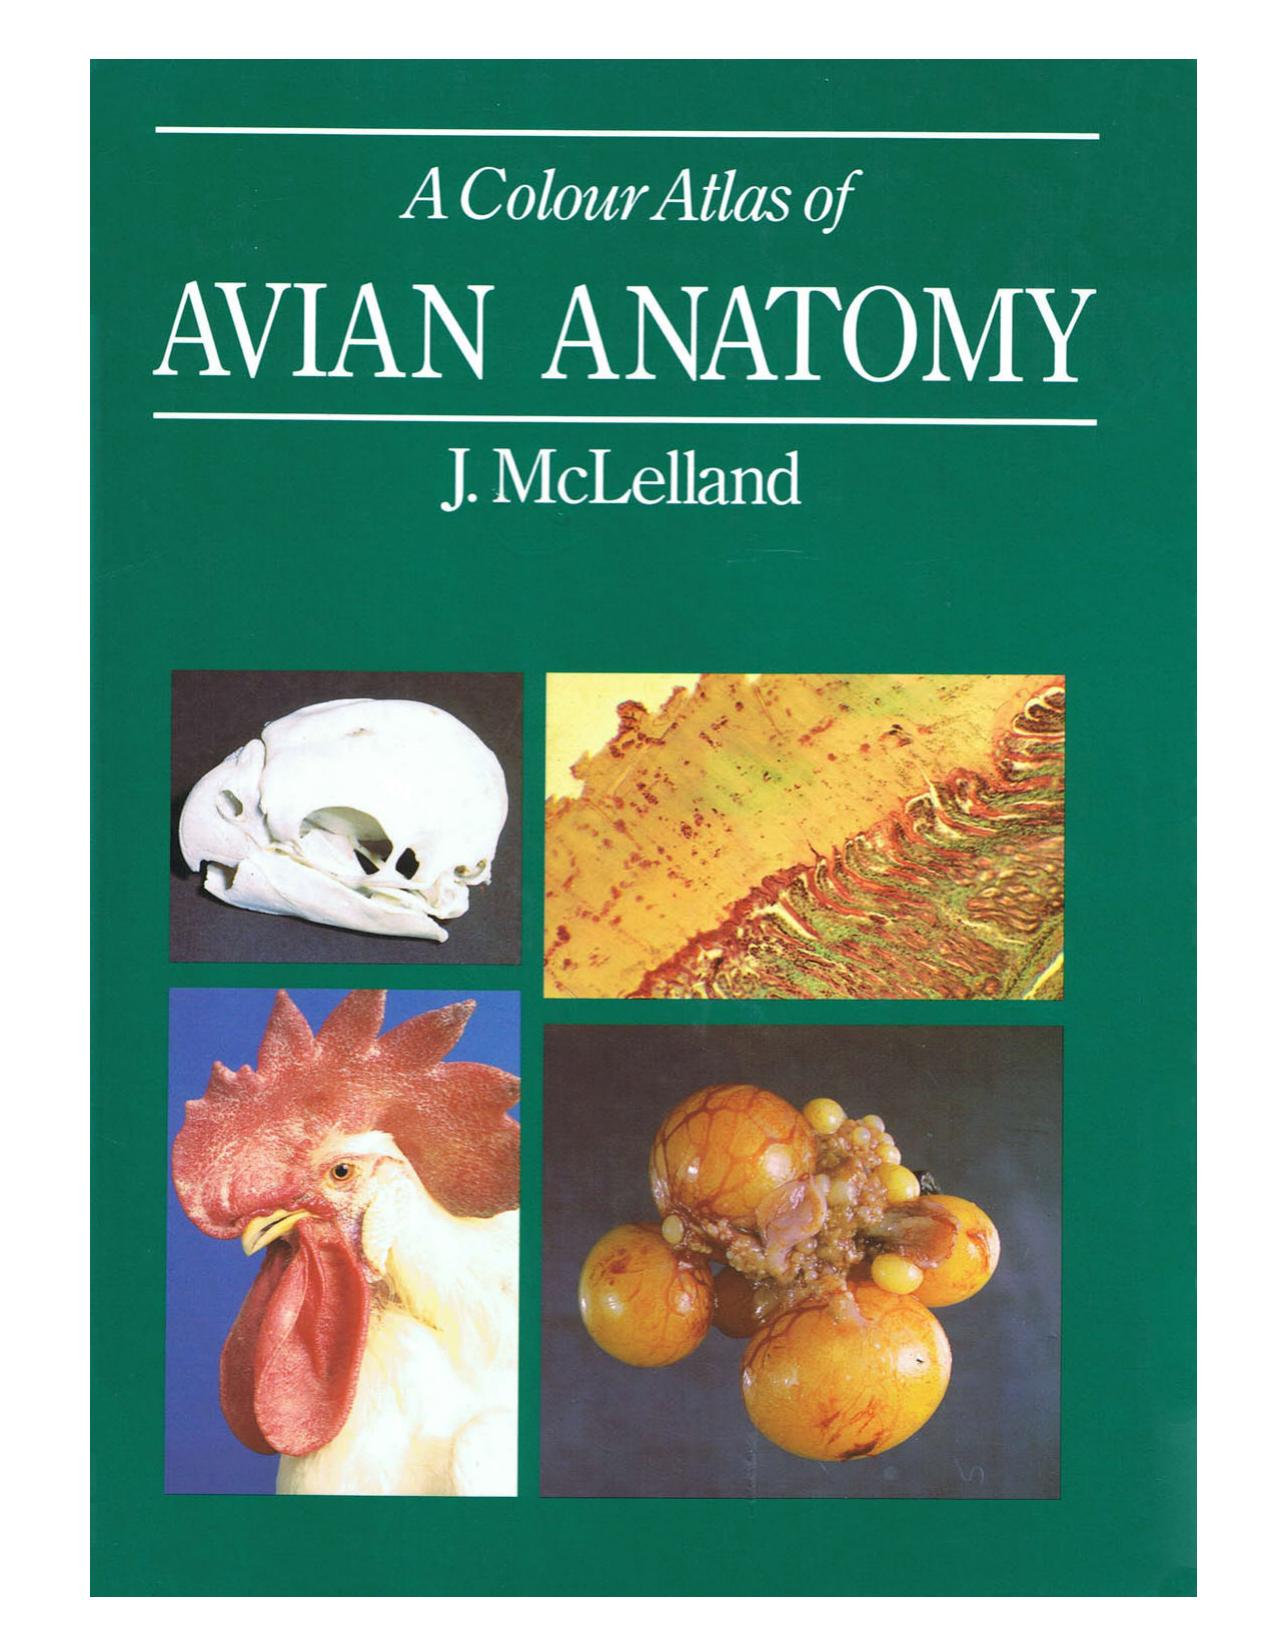 A Colour Atlas of Avian Anatomy 1990